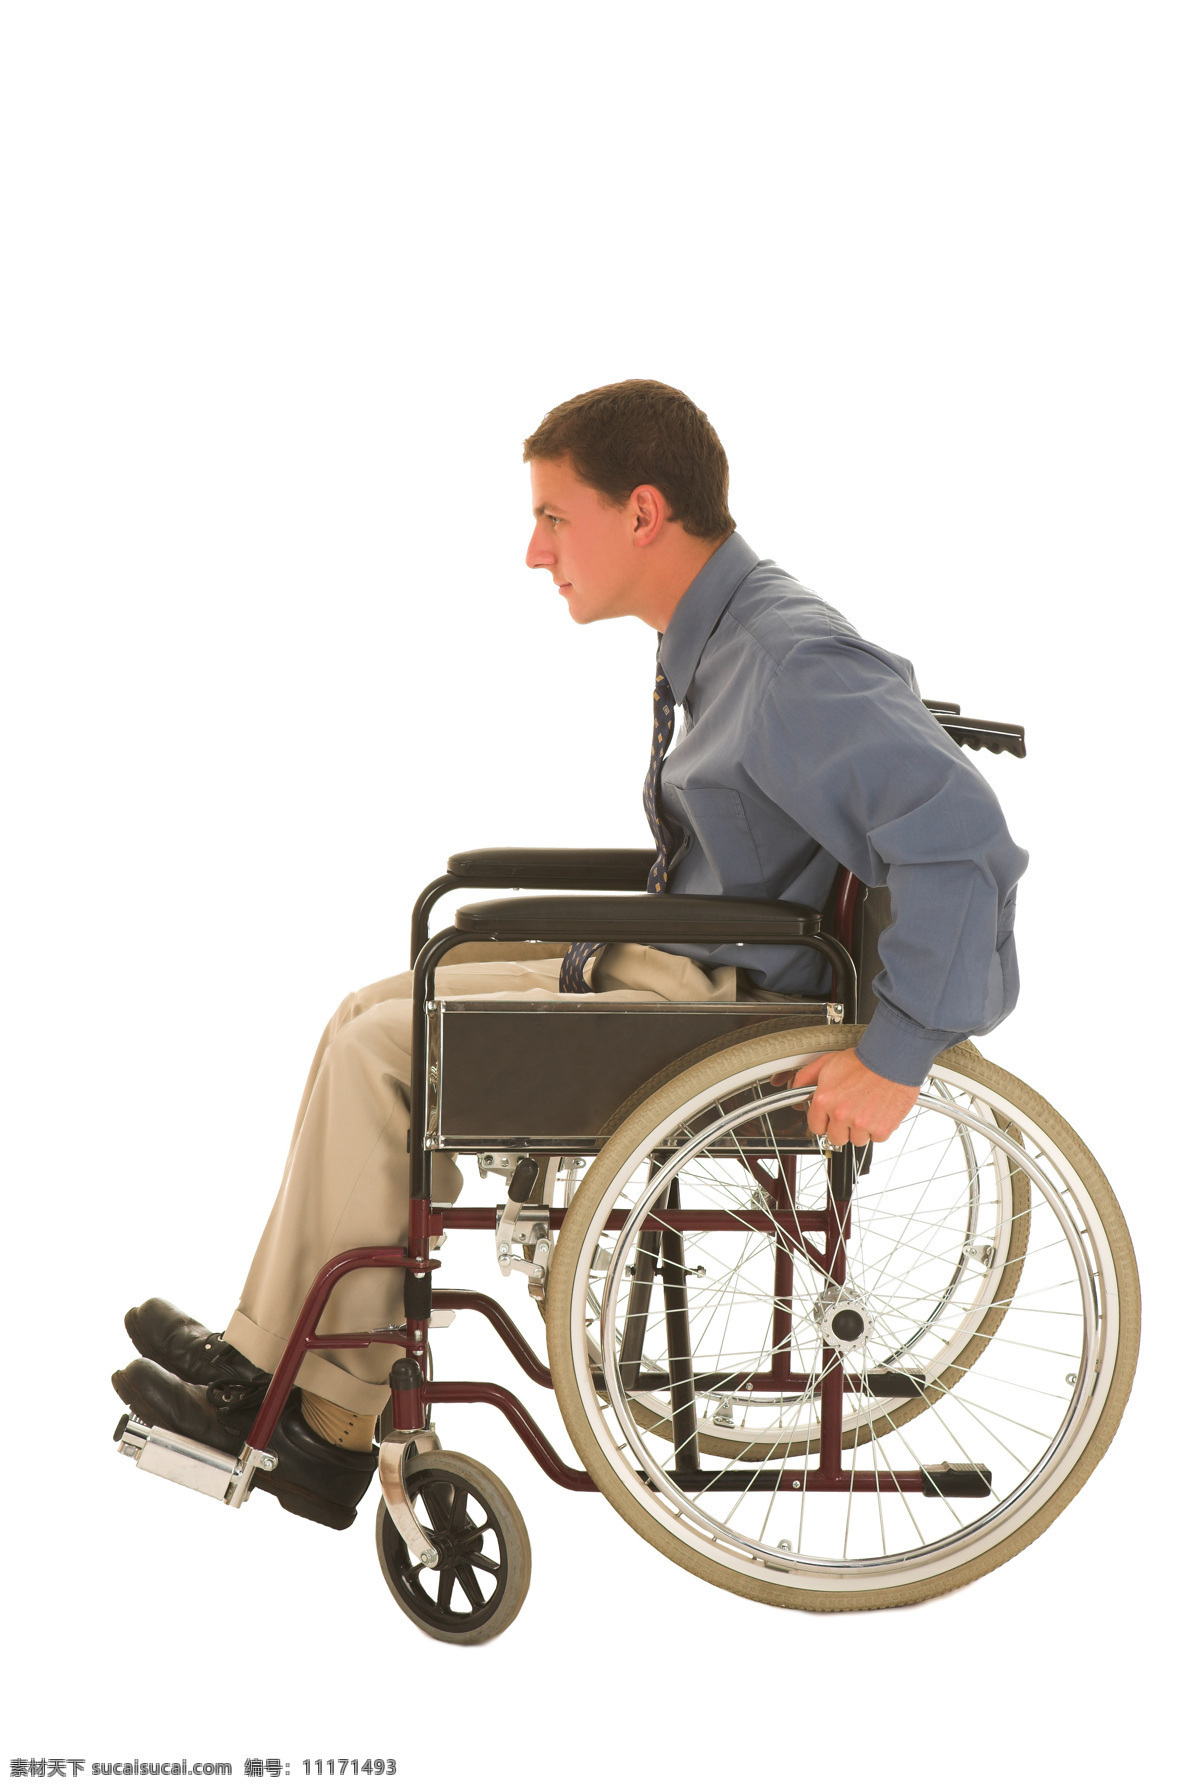 坐 轮椅 残疾人 白底 人物图库 其他人物 摄影图库